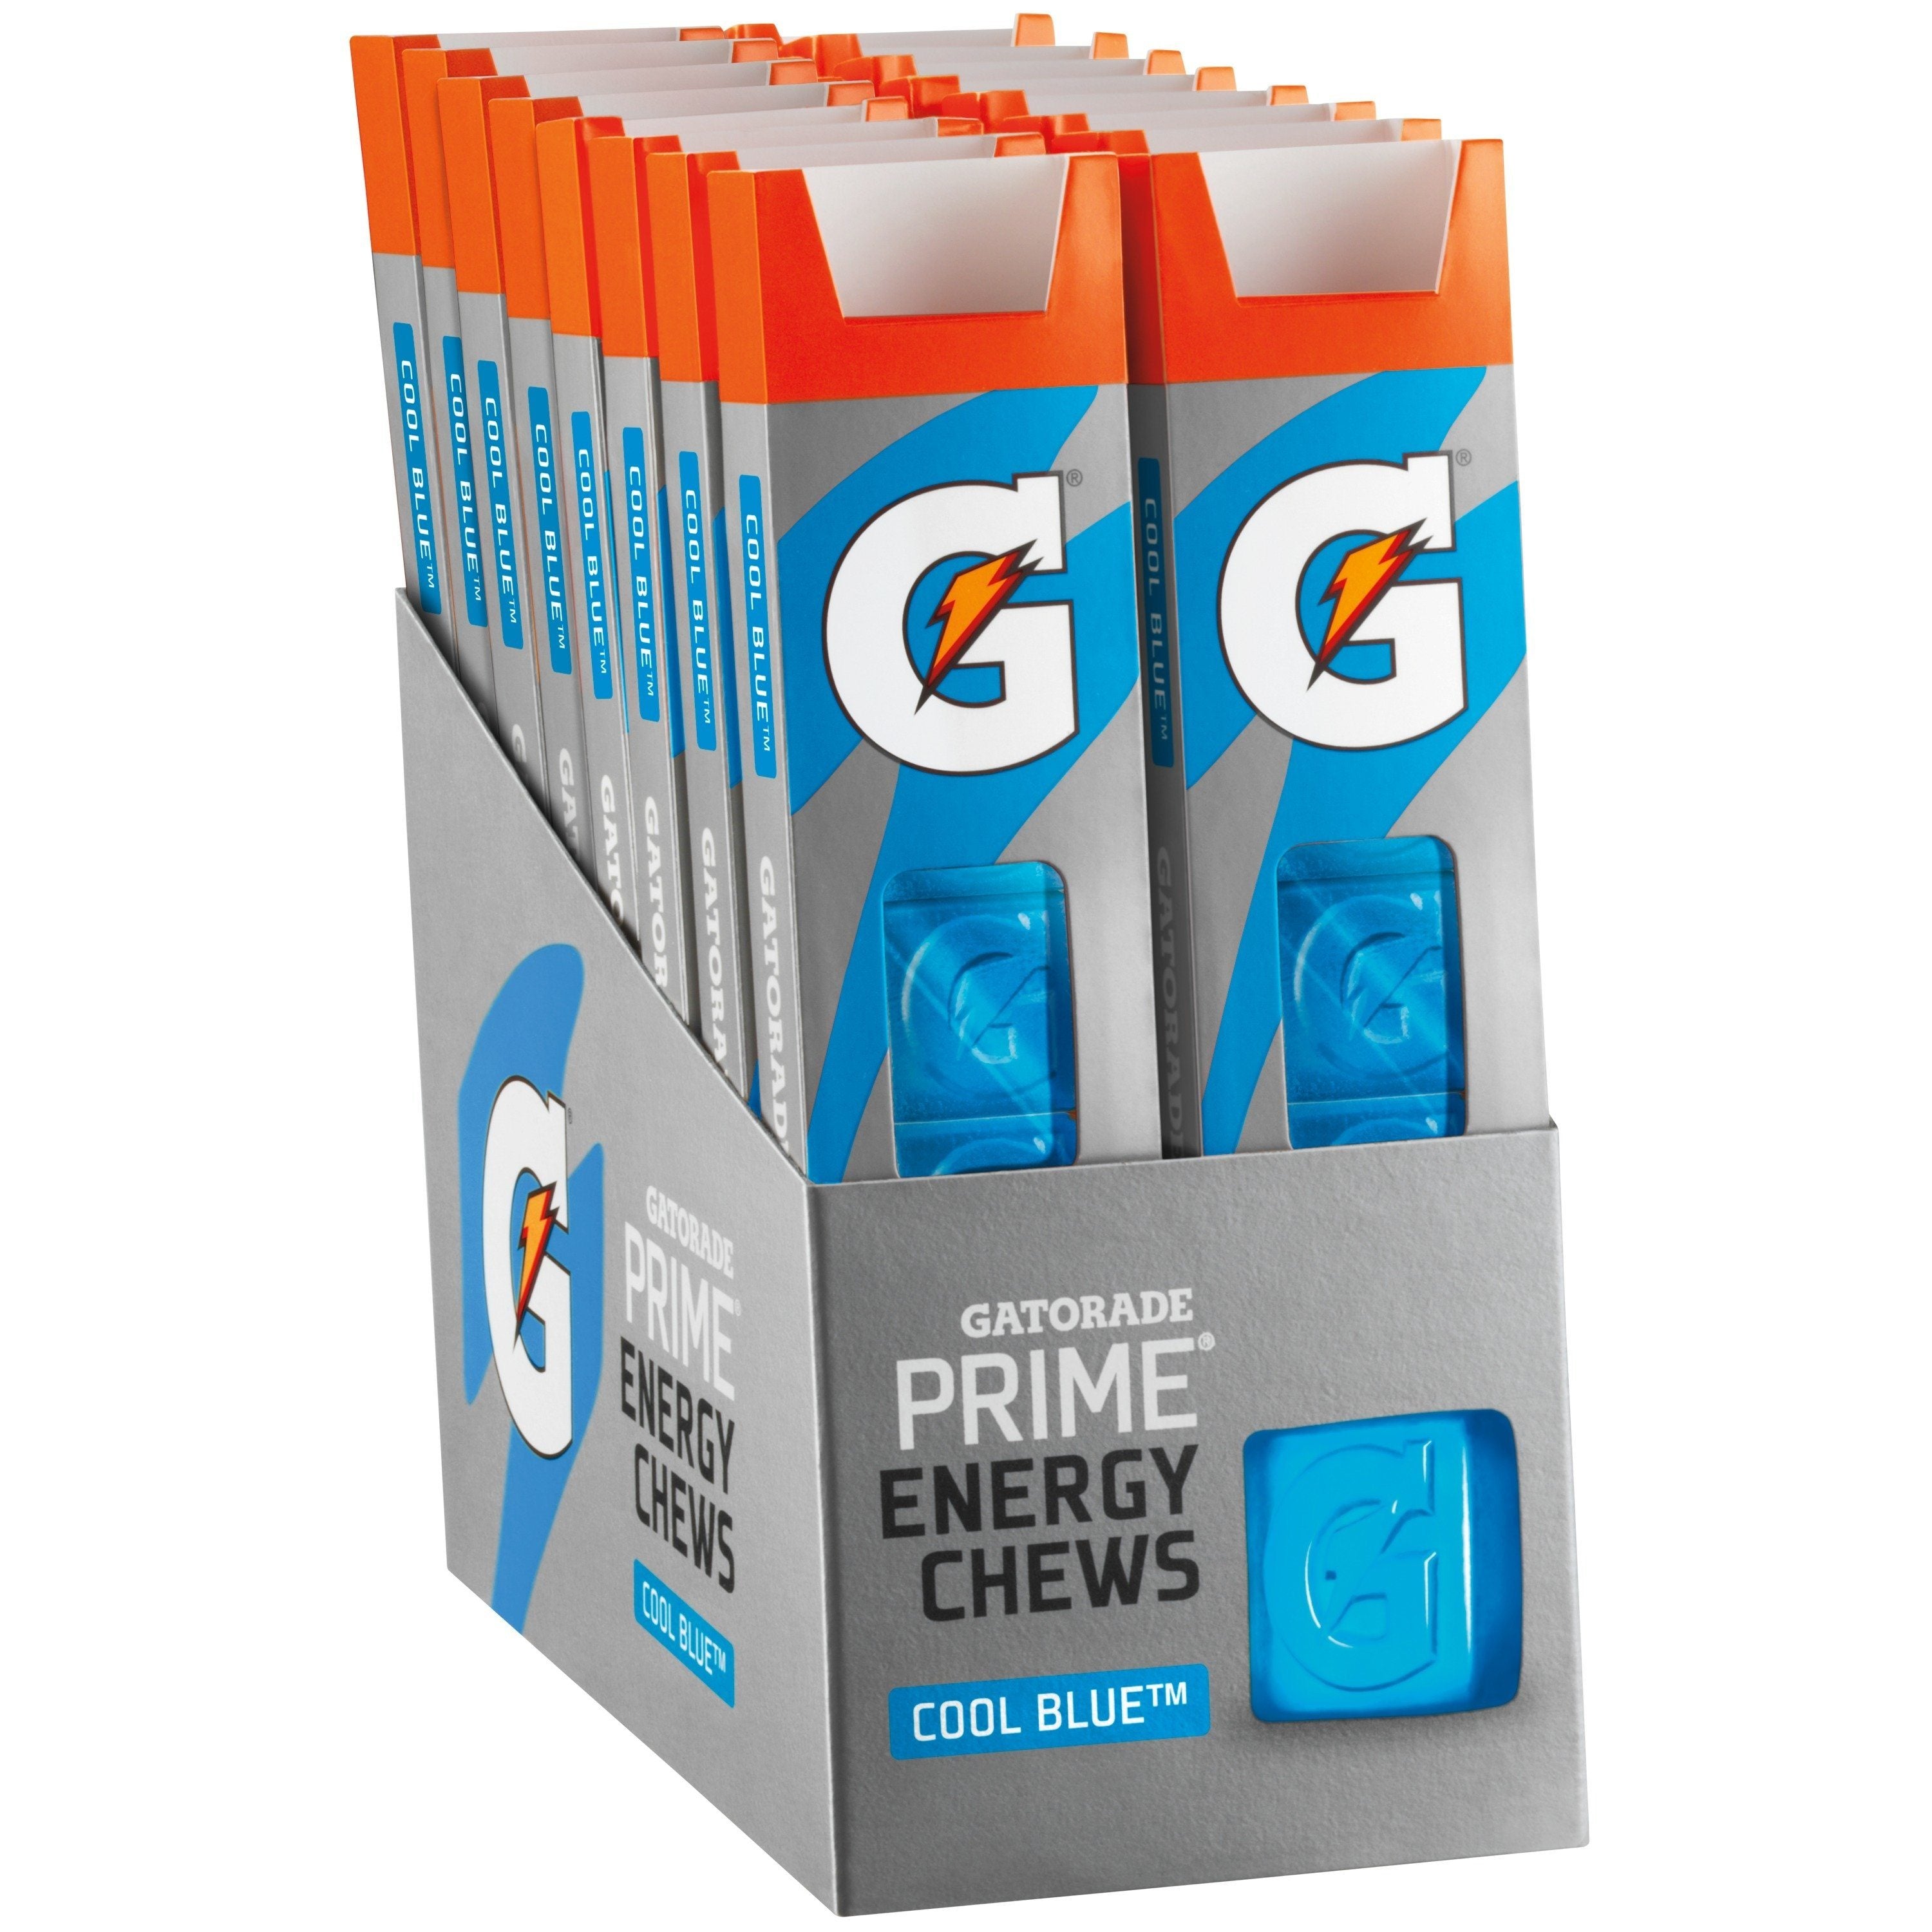 Gatorade Prime Energy Chews Gatorade Cool Blue 1 Oz-16 Count 